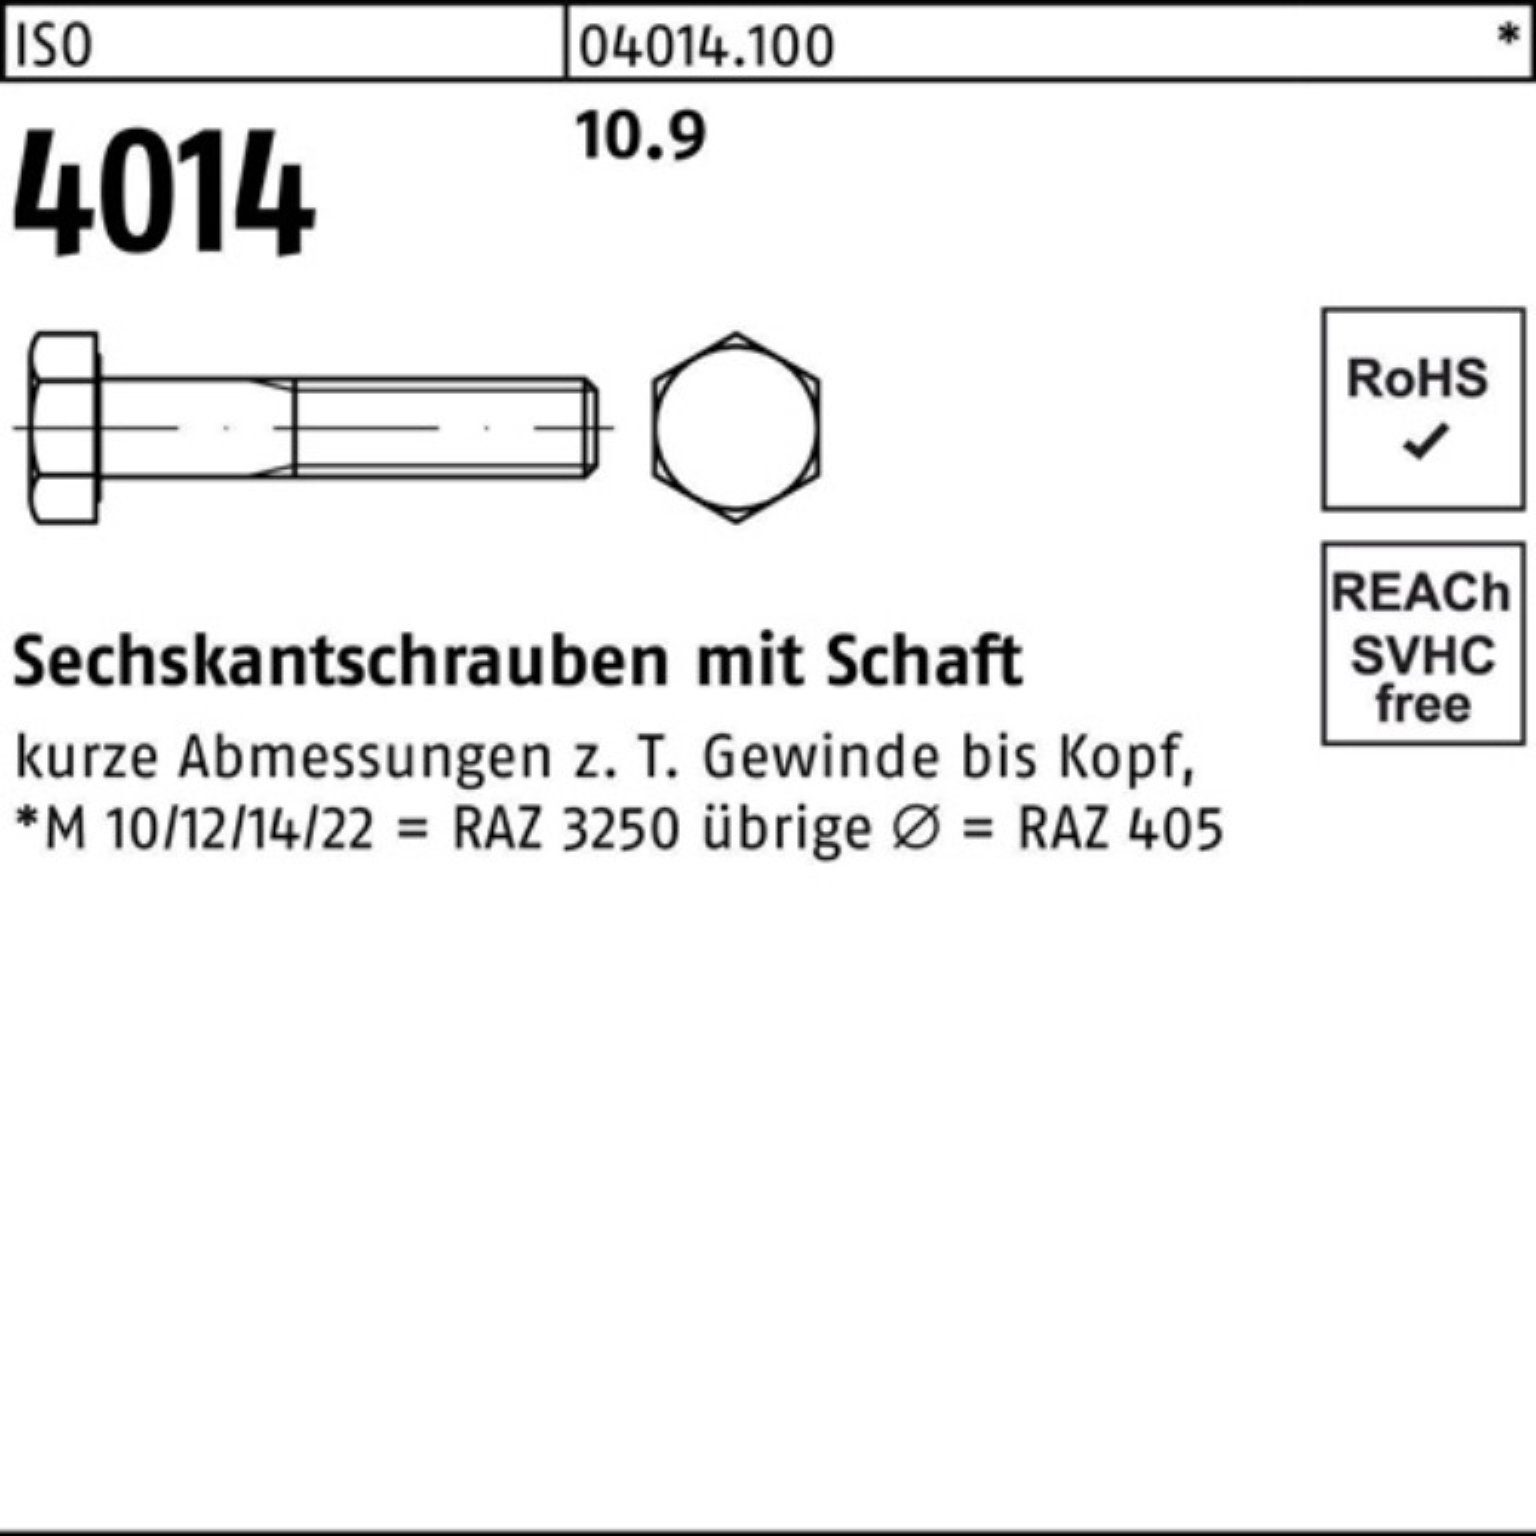 I M14x Schaft Bufab Sechskantschraube Pack 10.9 100er 200 Sechskantschraube 4014 ISO 25 Stück